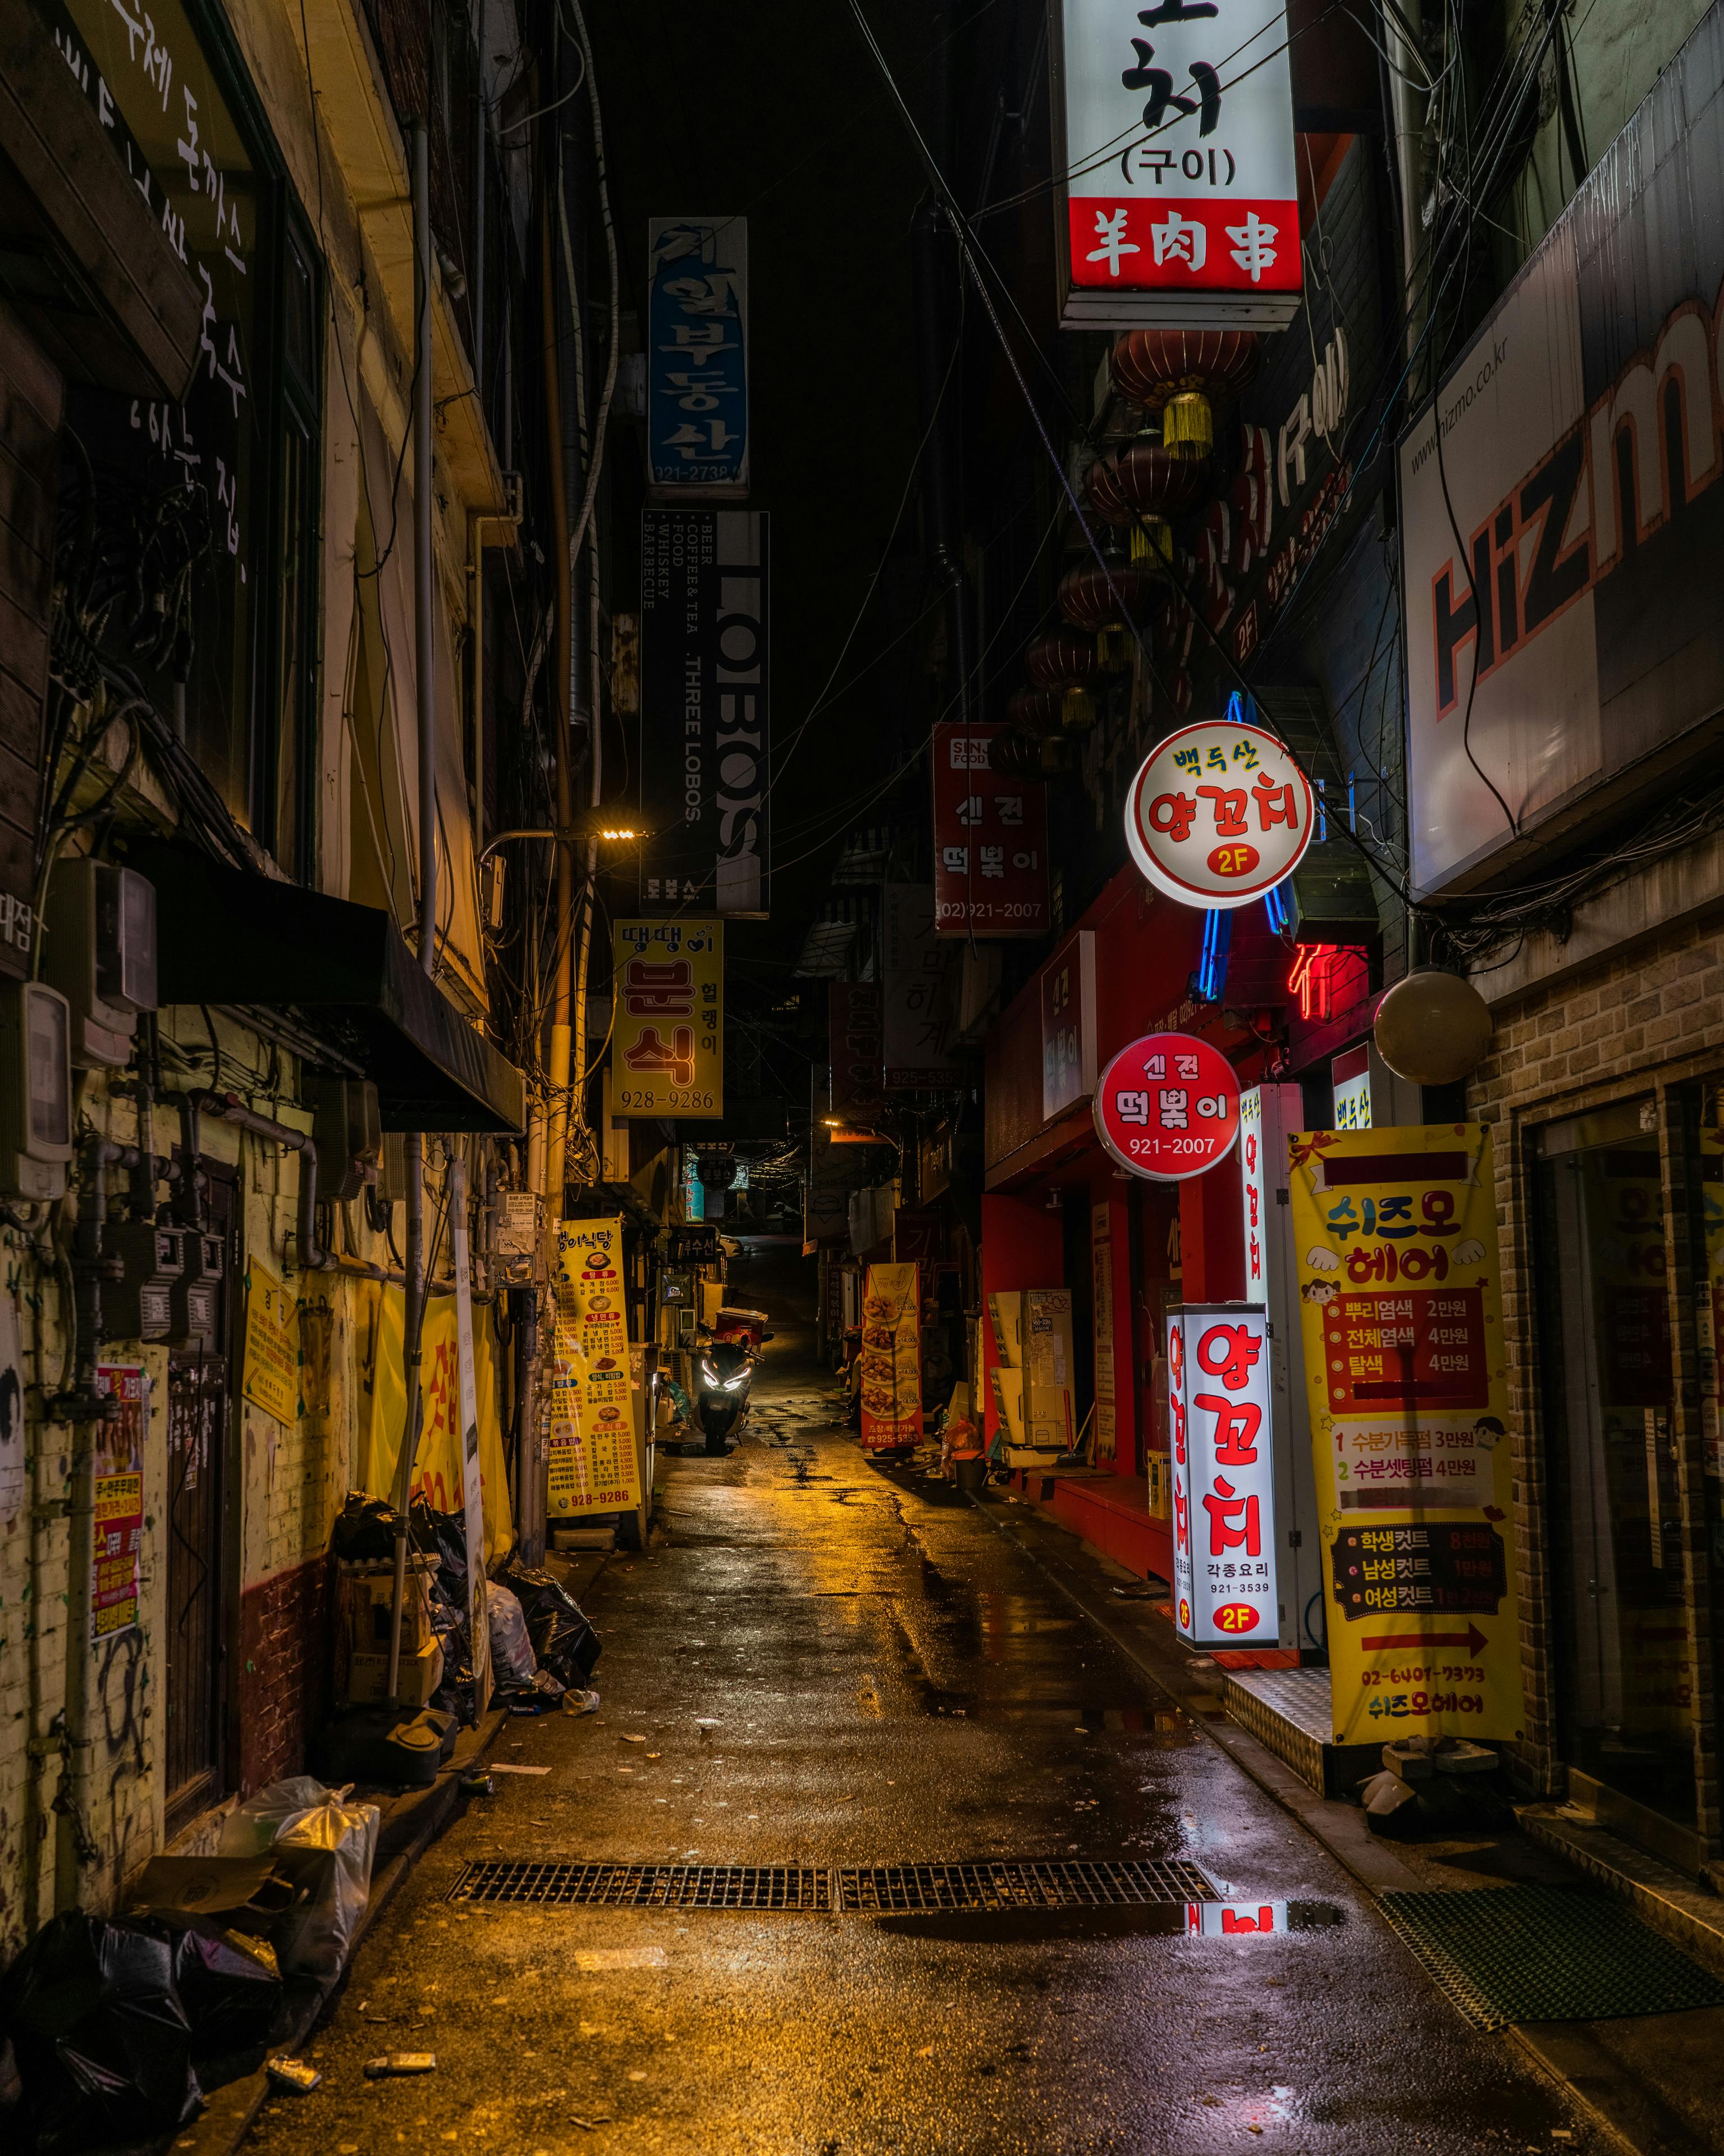 Фото Улицы Города Ночью